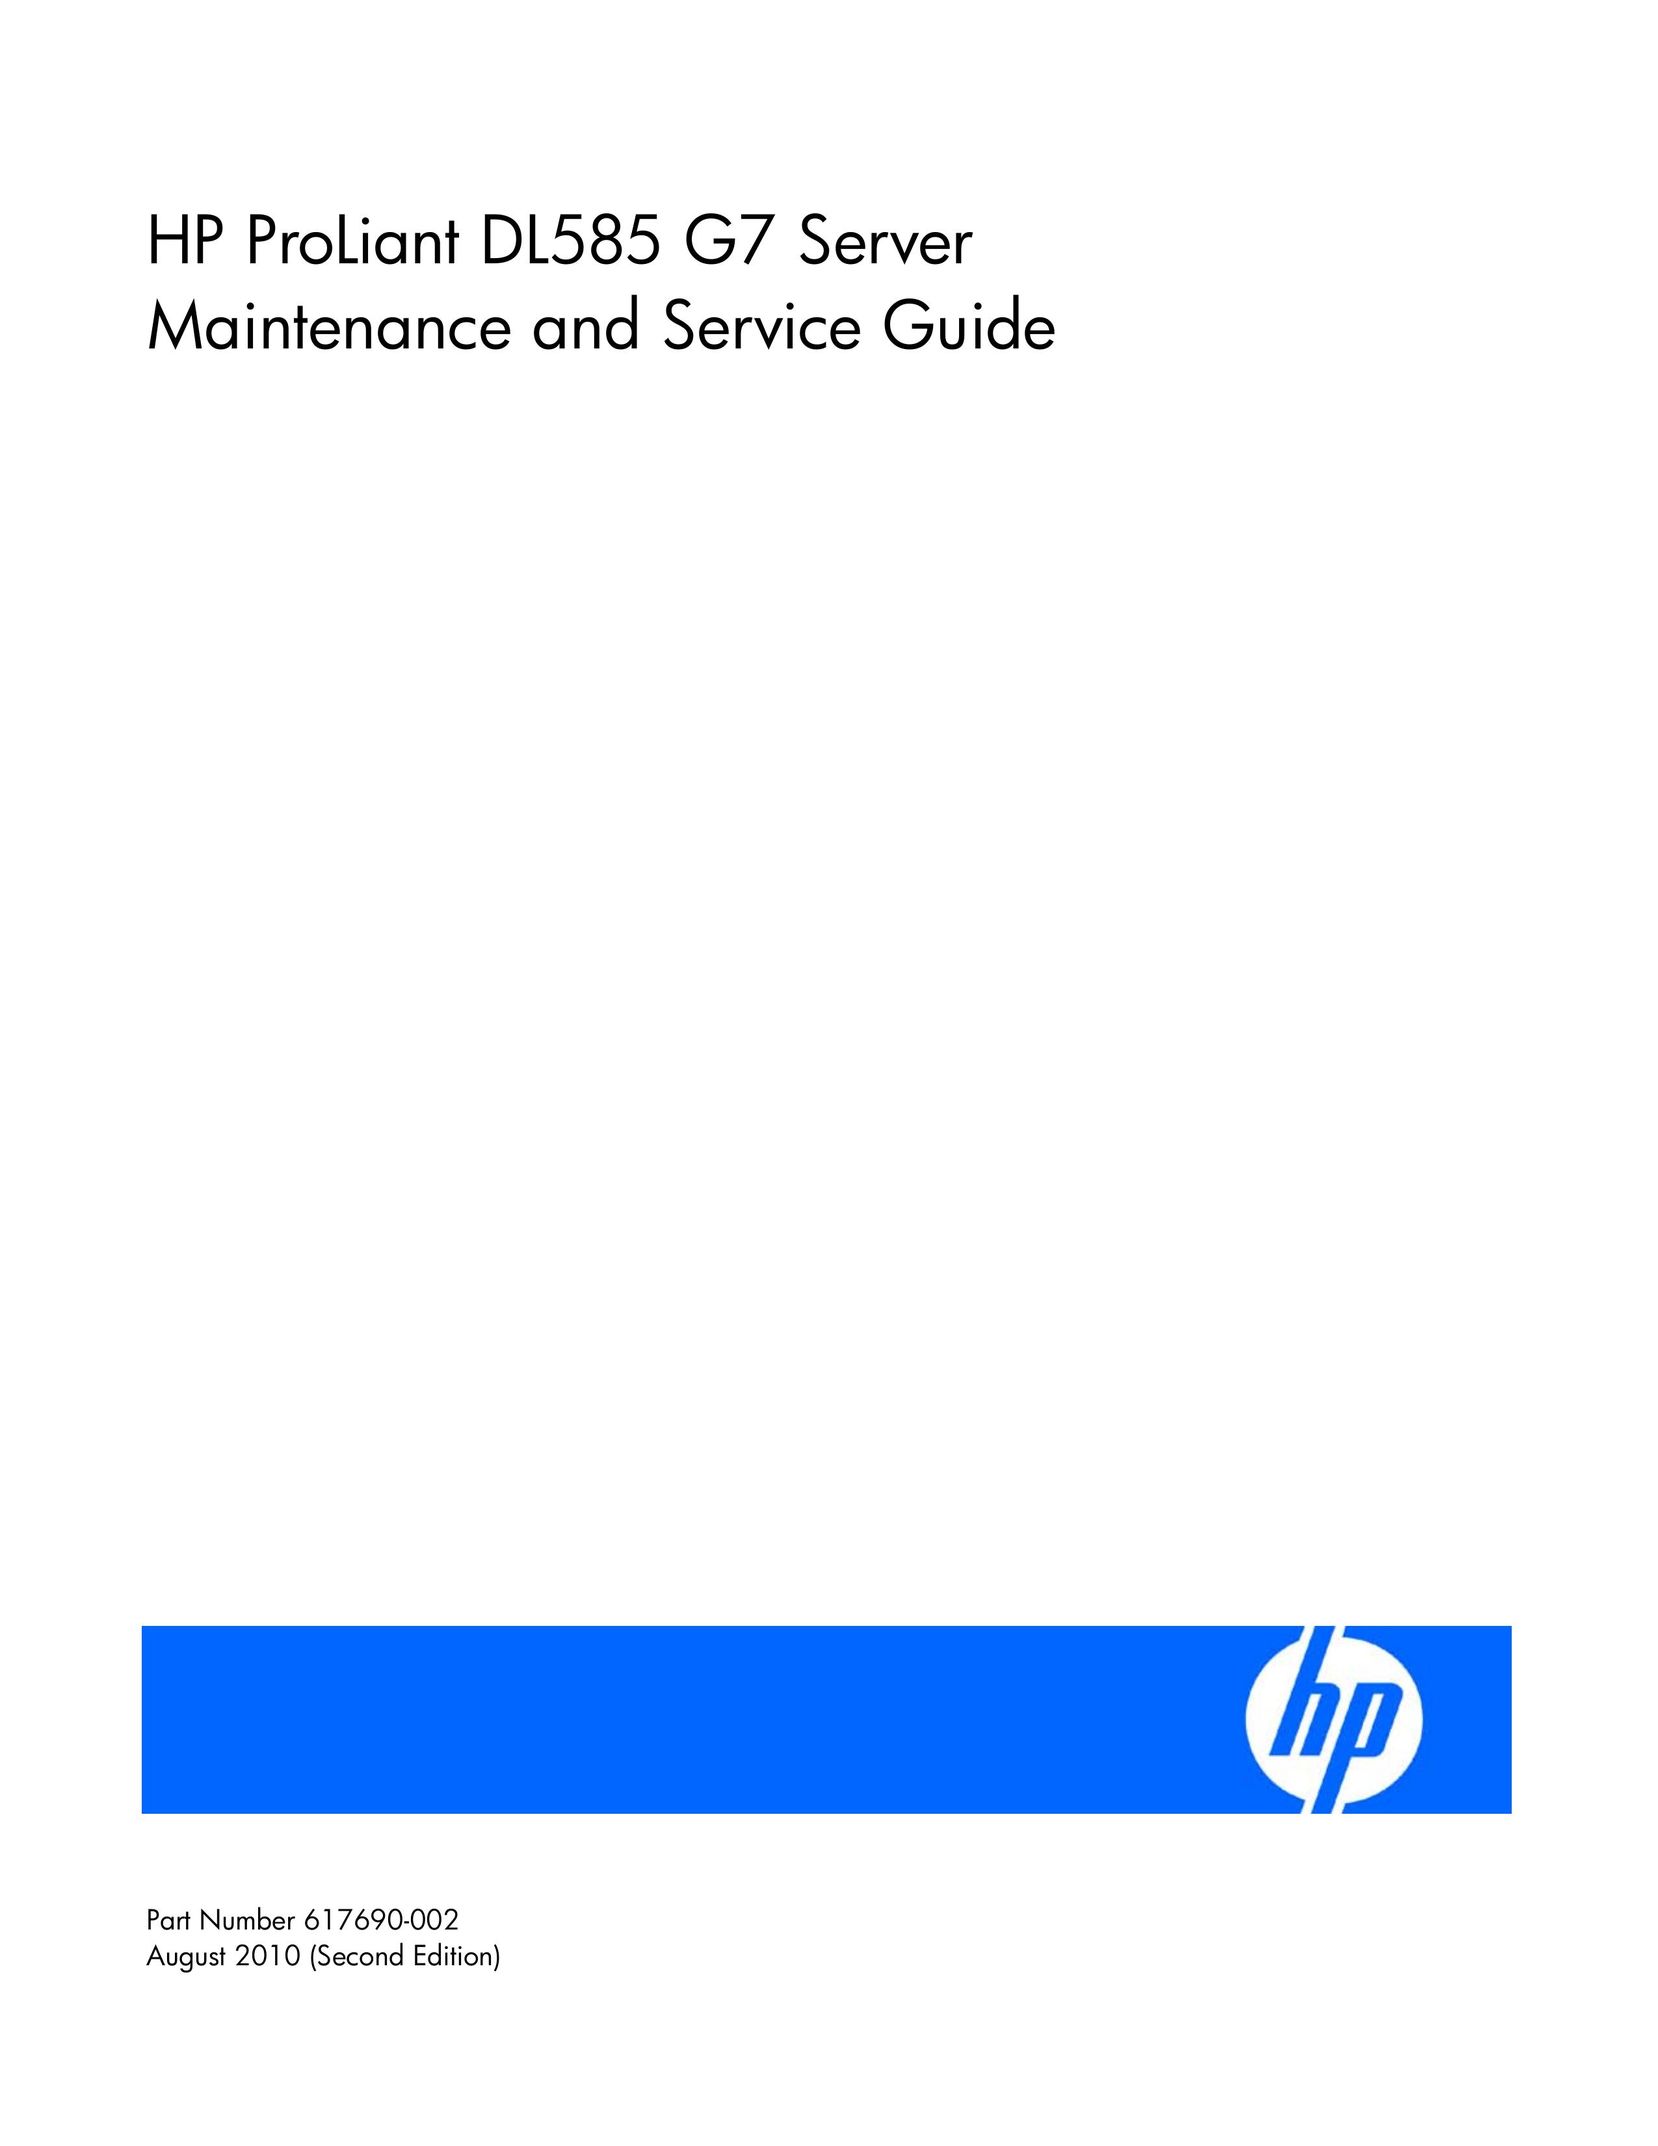 HP (Hewlett-Packard) 653745-001 Server User Manual